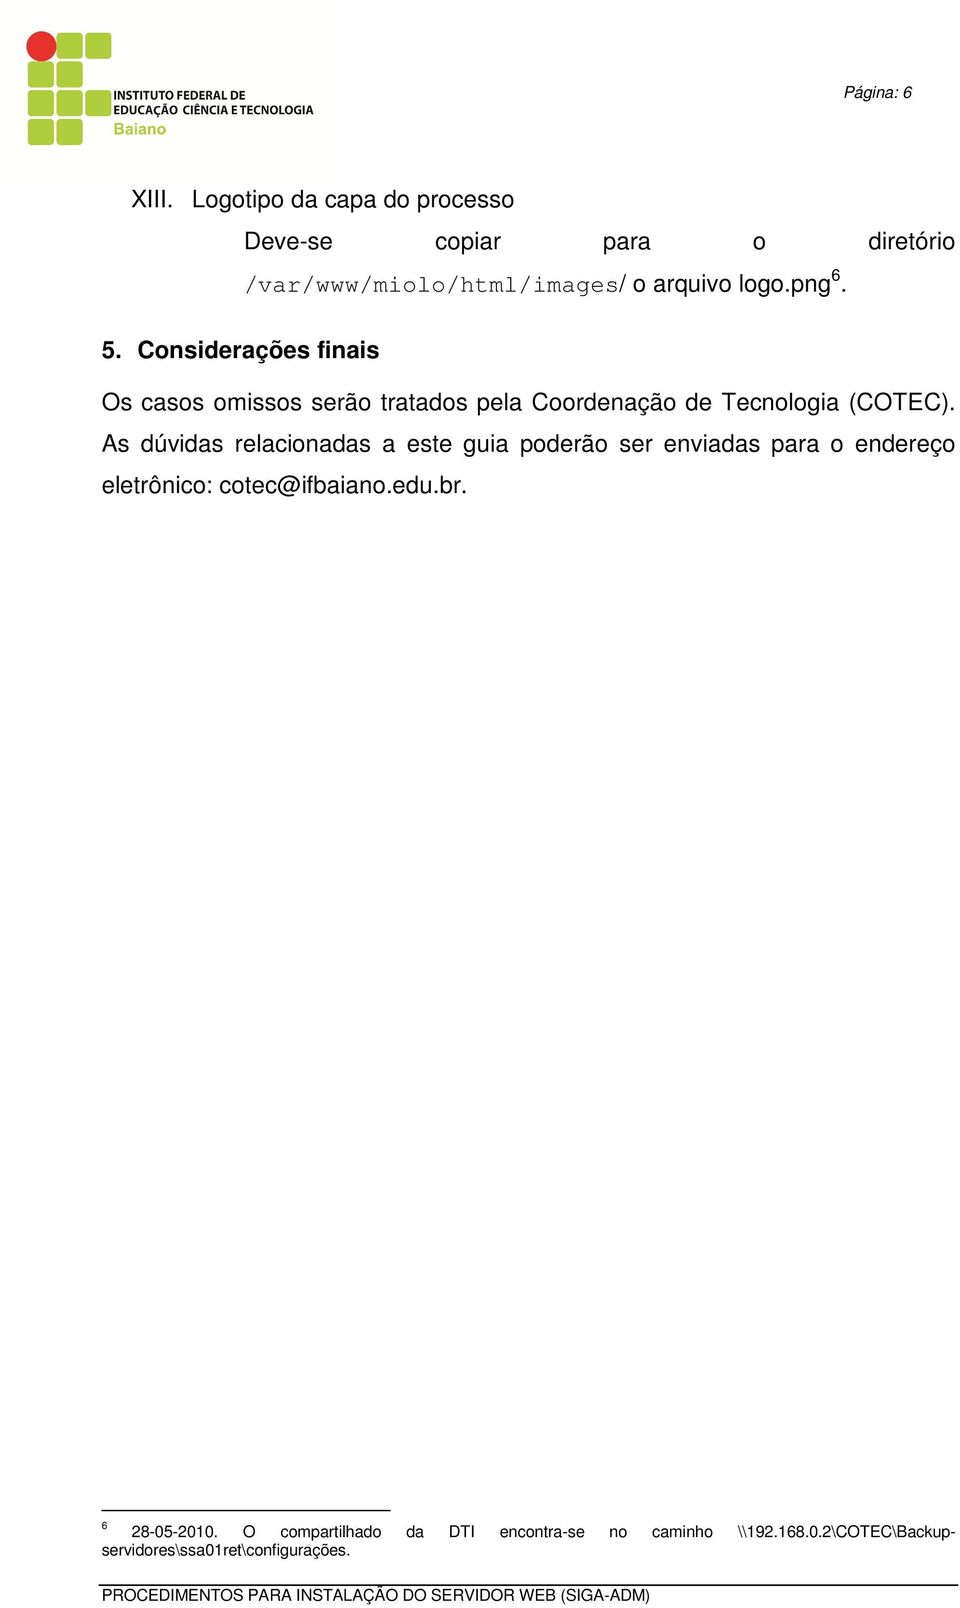 Considerações finais Os casos omissos serão tratados pela Coordenação de Tecnologia (COTEC).